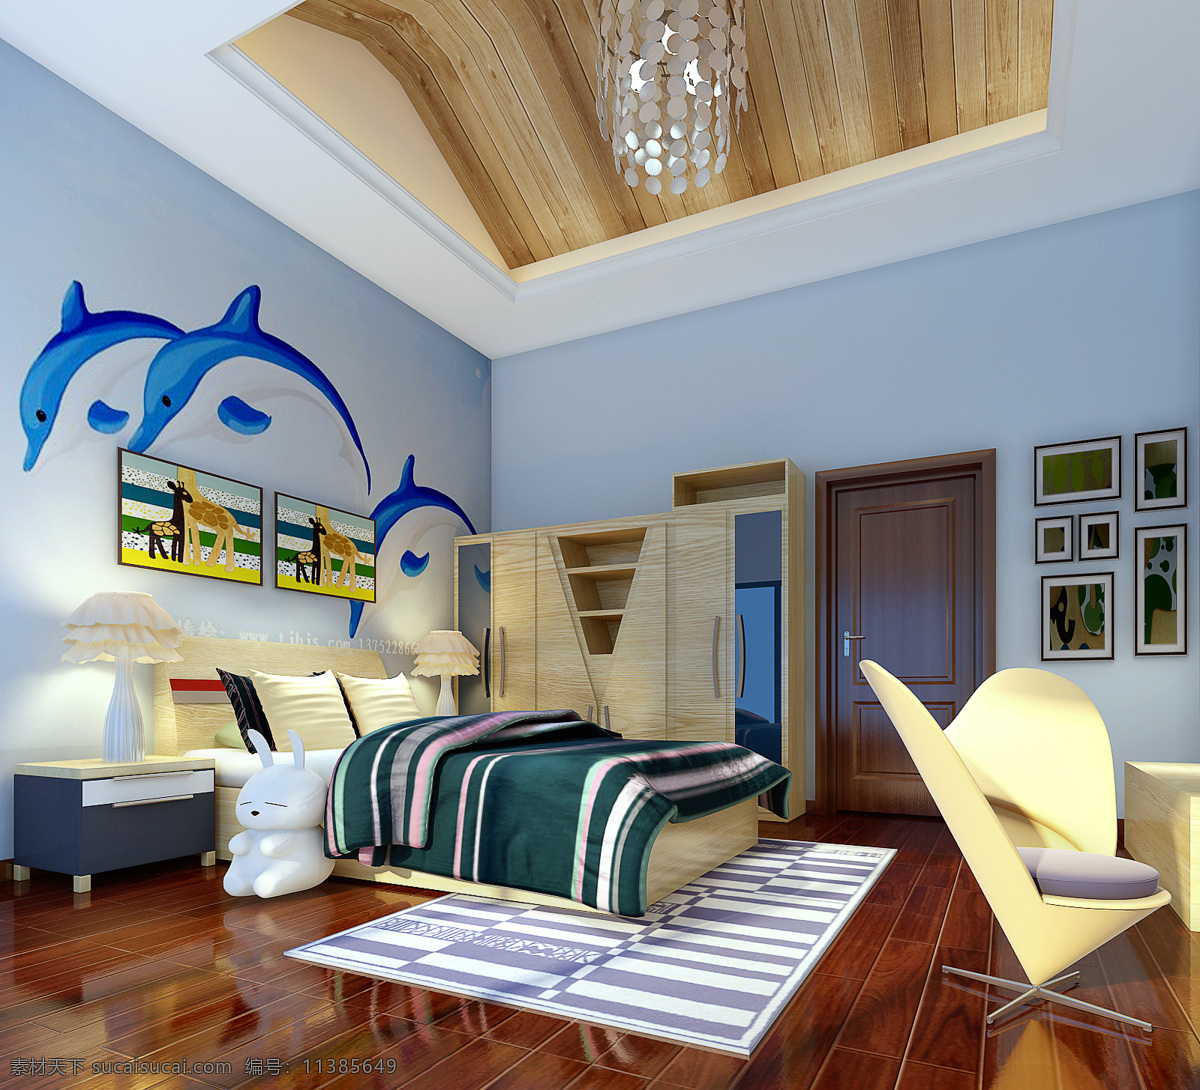 室内设计 效果图 3d效果图 地中海风格 吊顶设计 个性卧室设计 居室设计 家居装饰素材